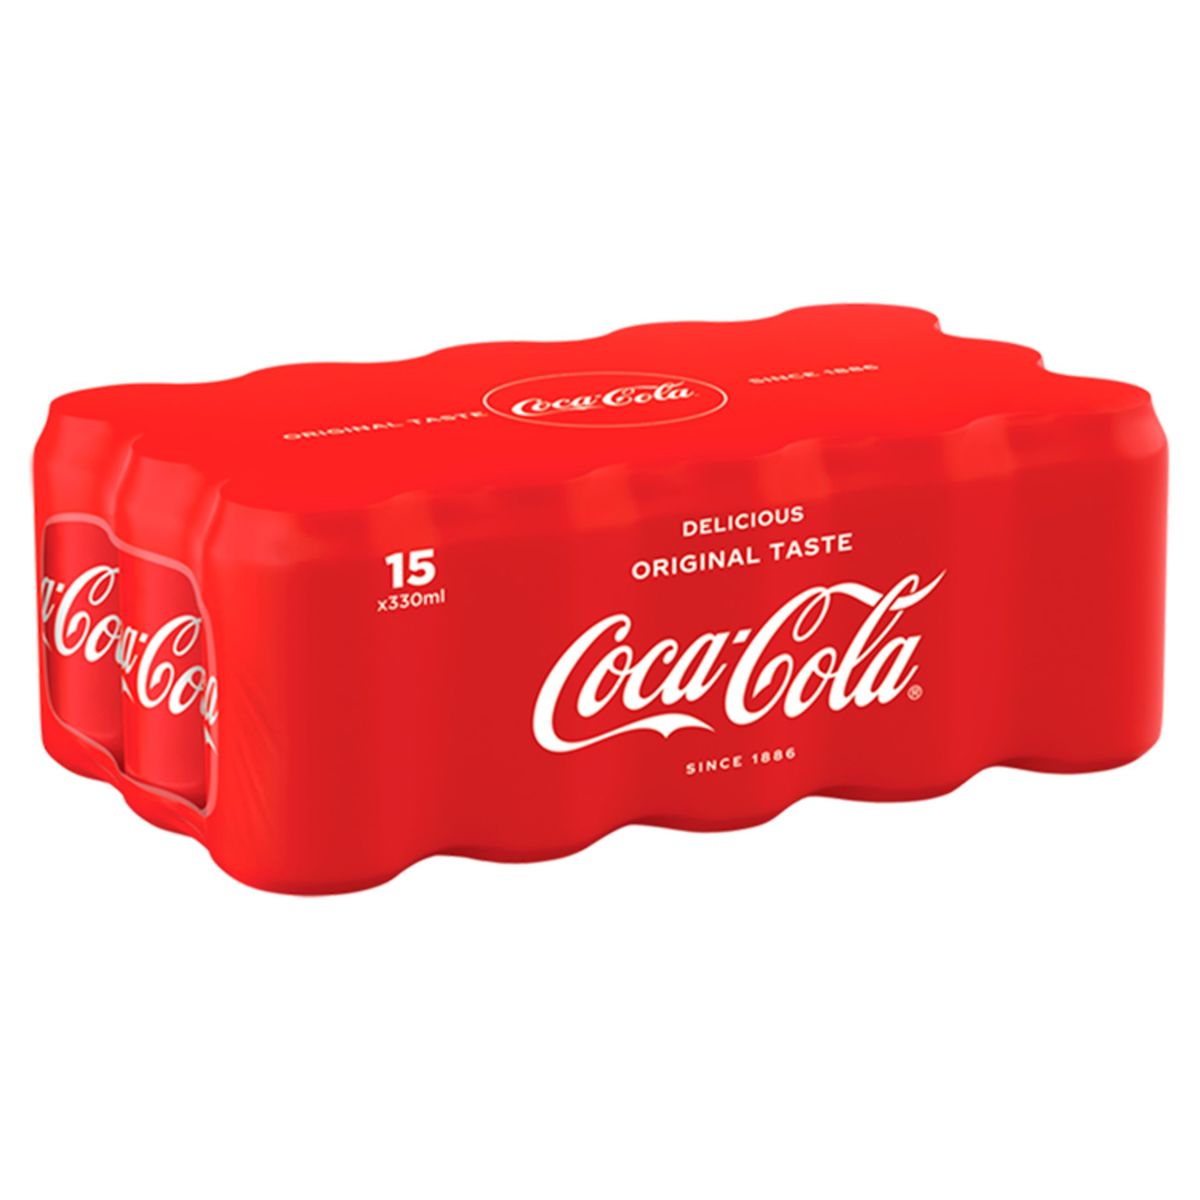 Coca-Cola Coke Soft drink 15 x 330 ml